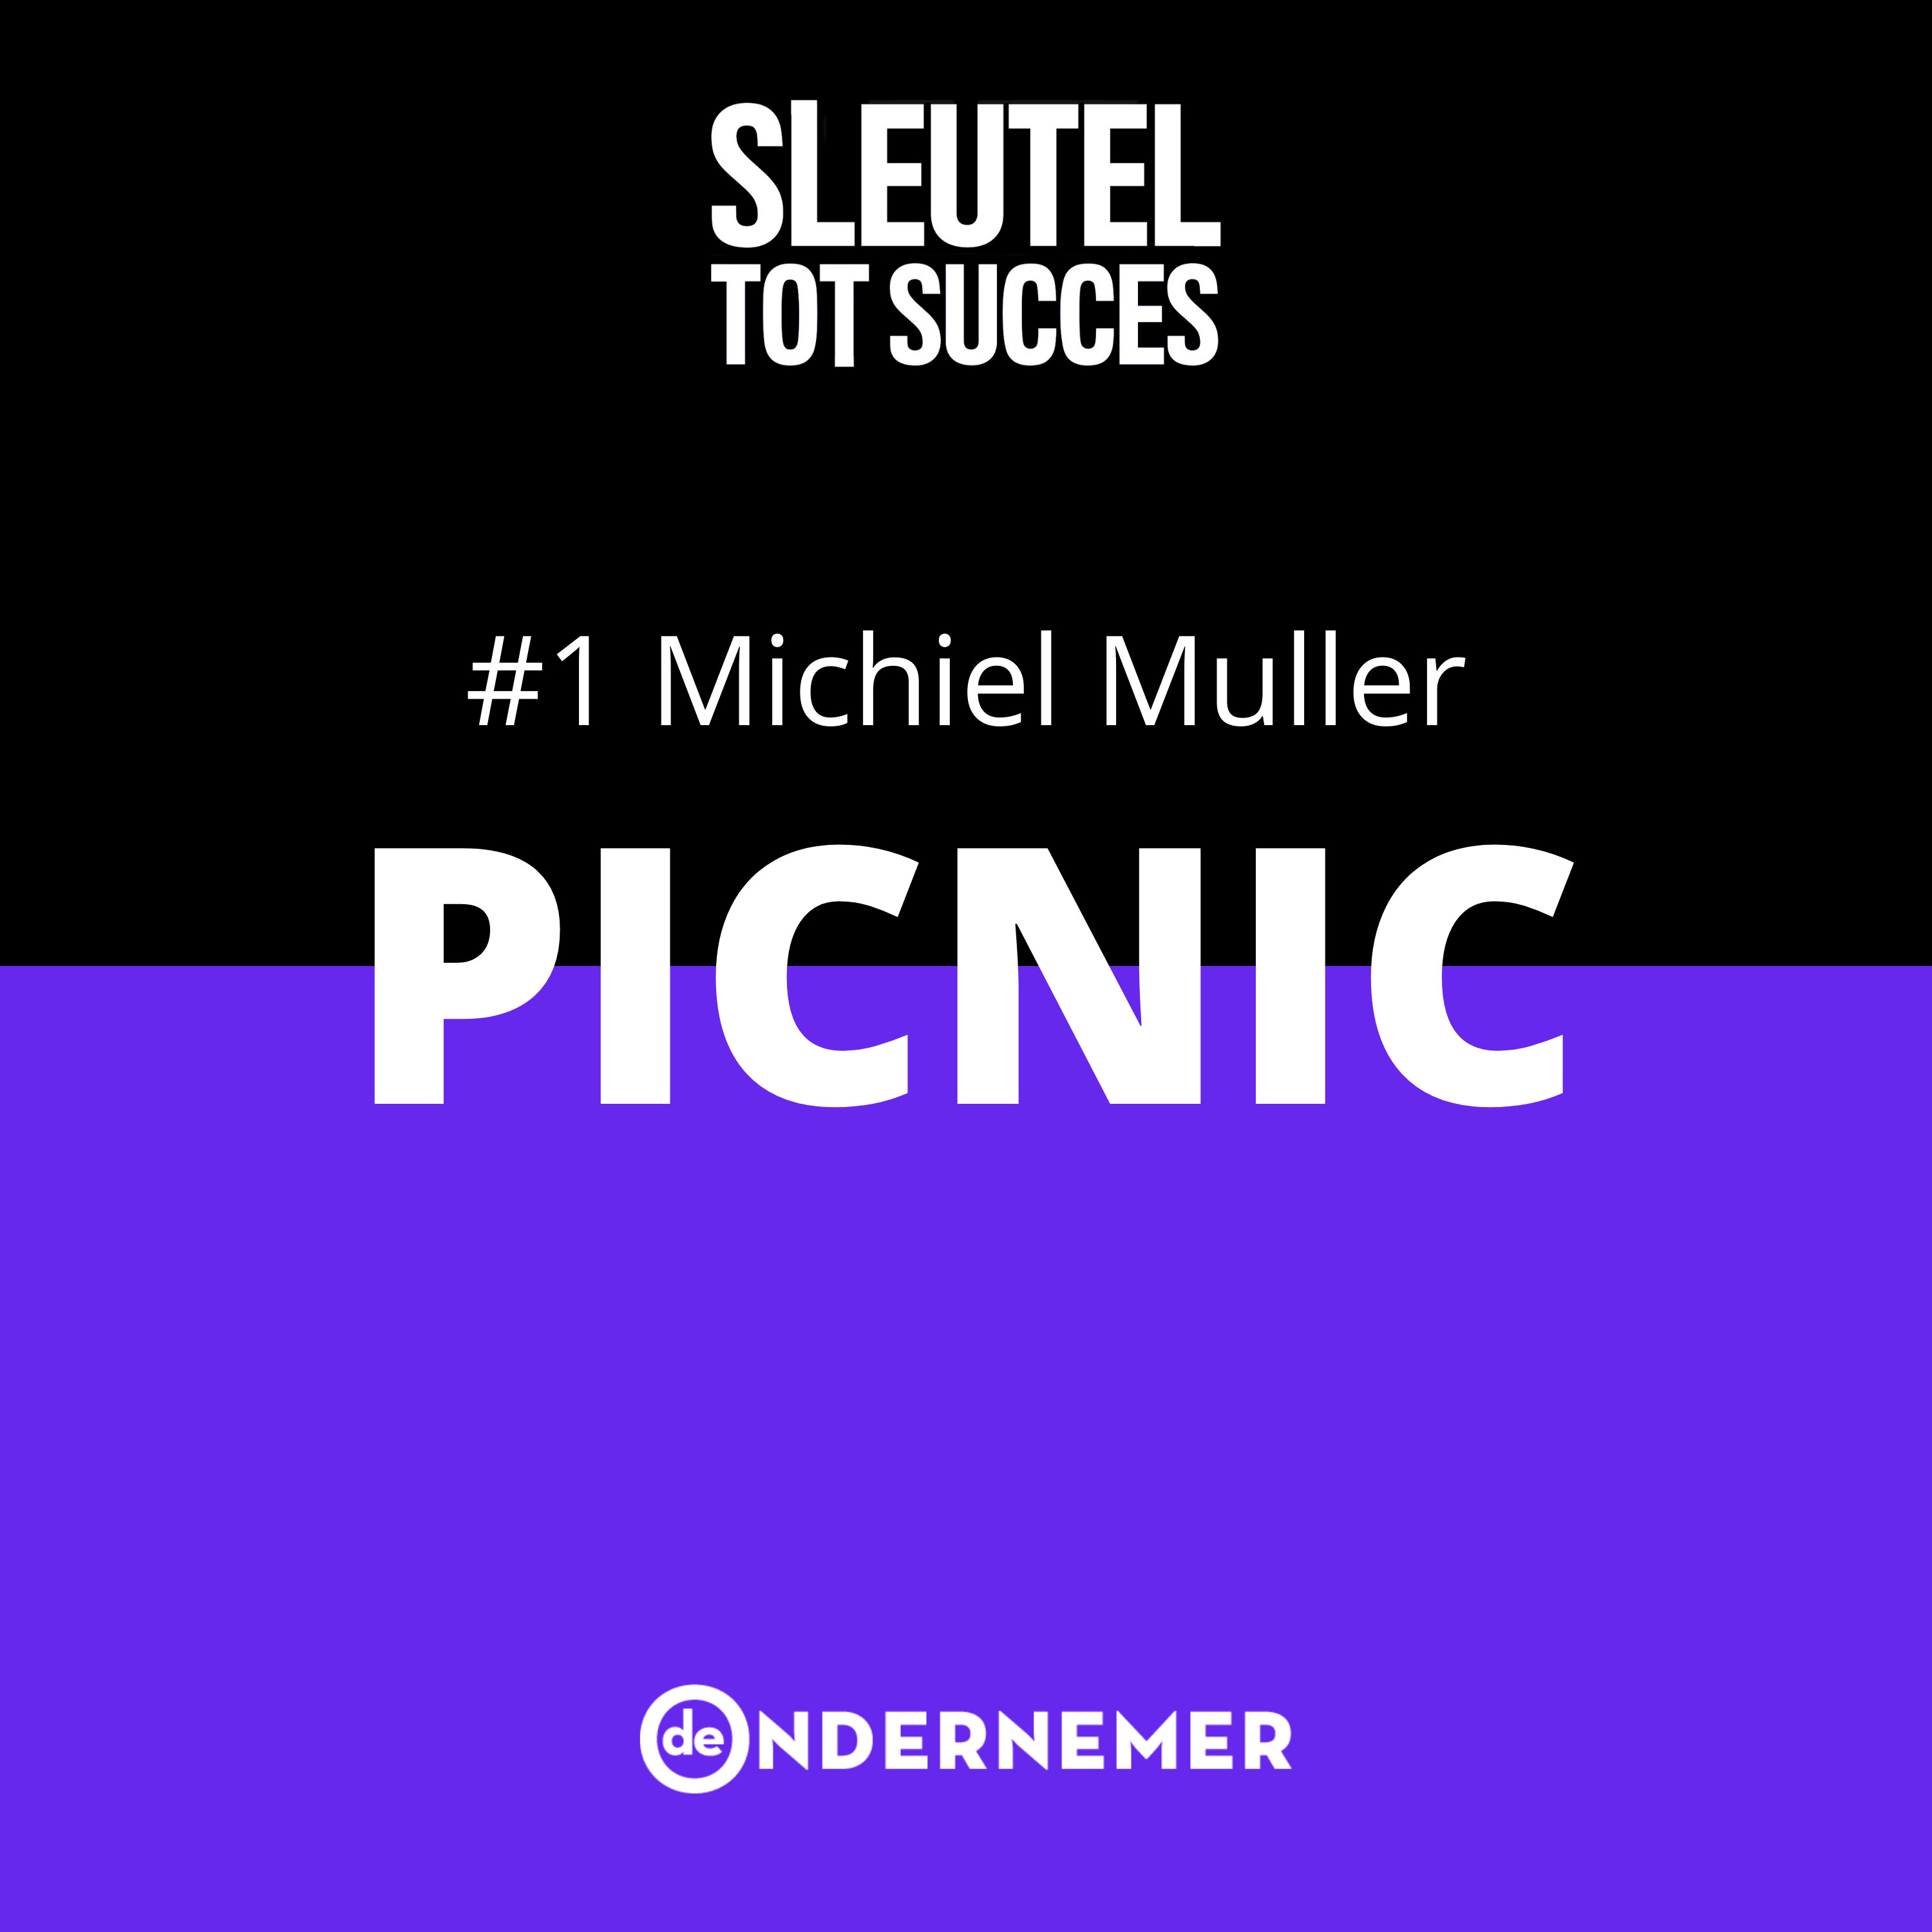 Afl. 1 - Hoe Michiel Muller met online supermarkt Picnic stad voor stad blijft veroveren (ook over de grens)